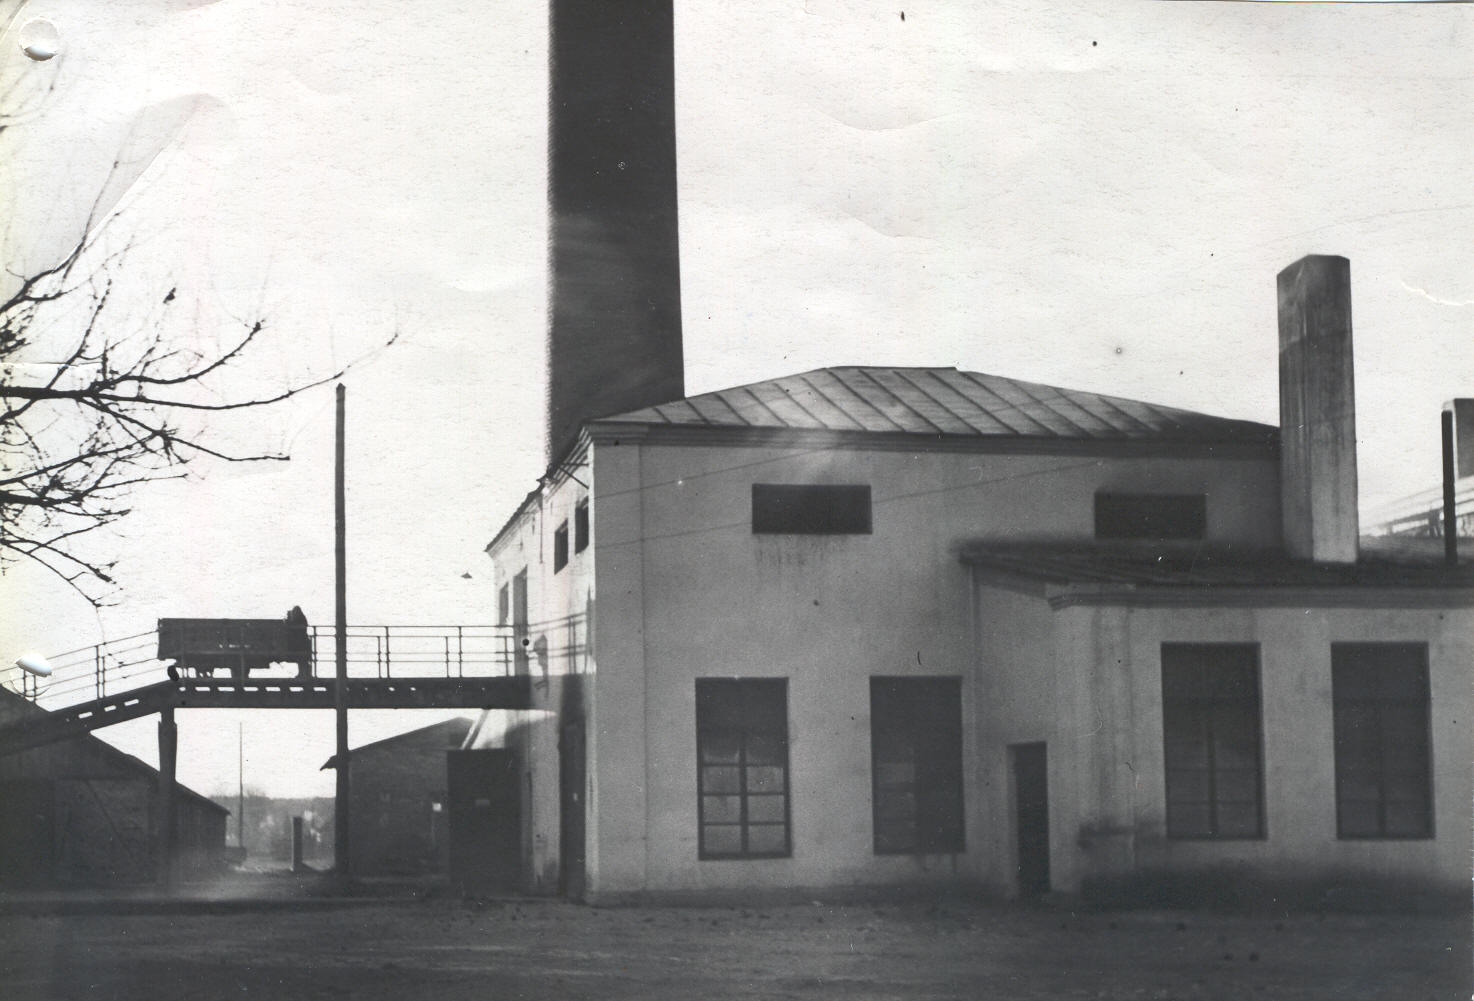 Photo. Võru Linna Elekrijaama Estags, boilerhouse and central heating boiler in 1948.